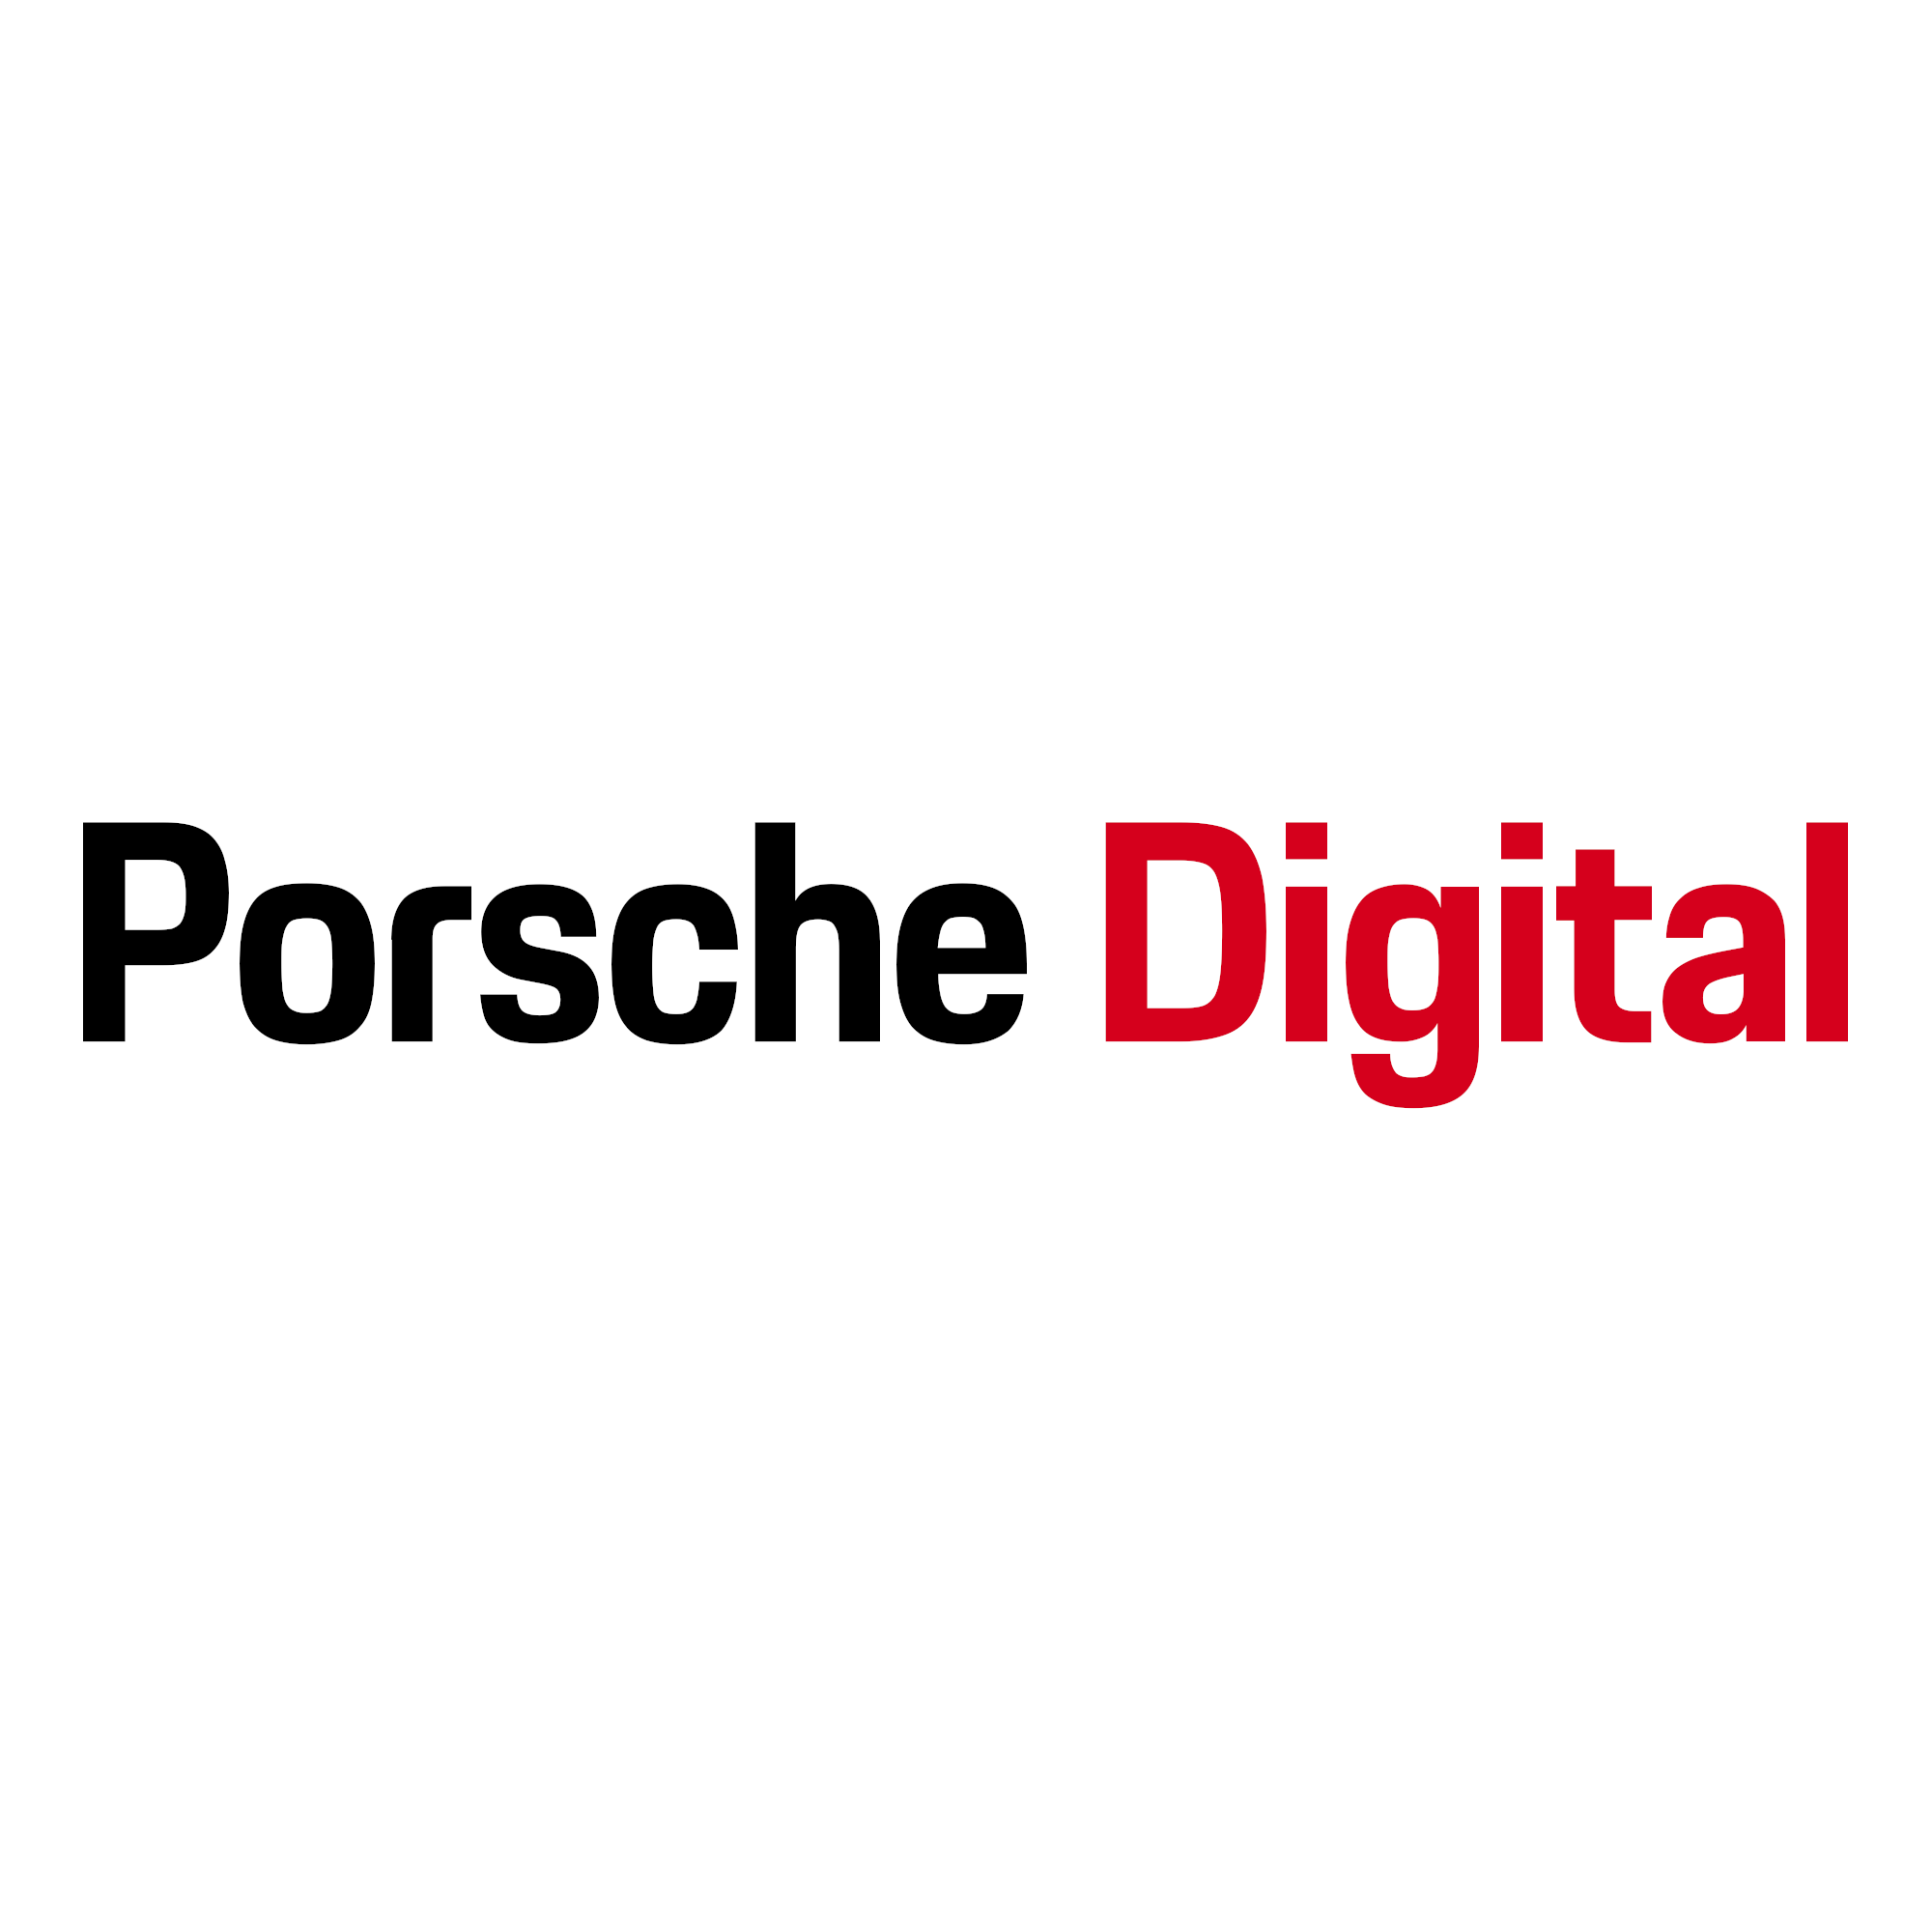 Porsche Digital España logo